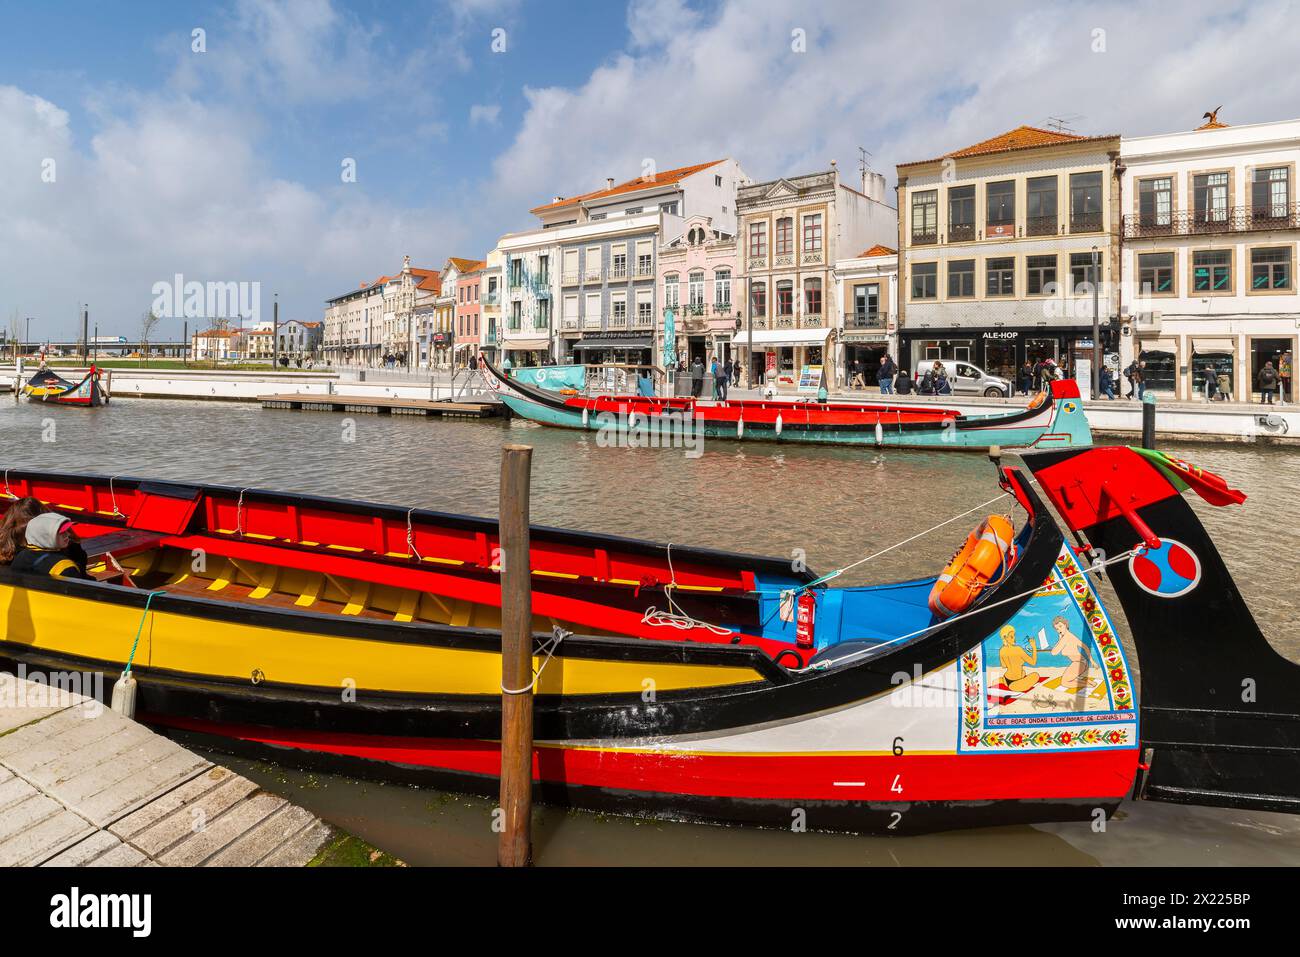 Case colorate vicino al Canal Central. Splendida cittadina panoramica di Aveiro in Portogallo. Una famosa città portoghese conosciuta per il suo fiume e i suoi canali. Aveiro Foto Stock